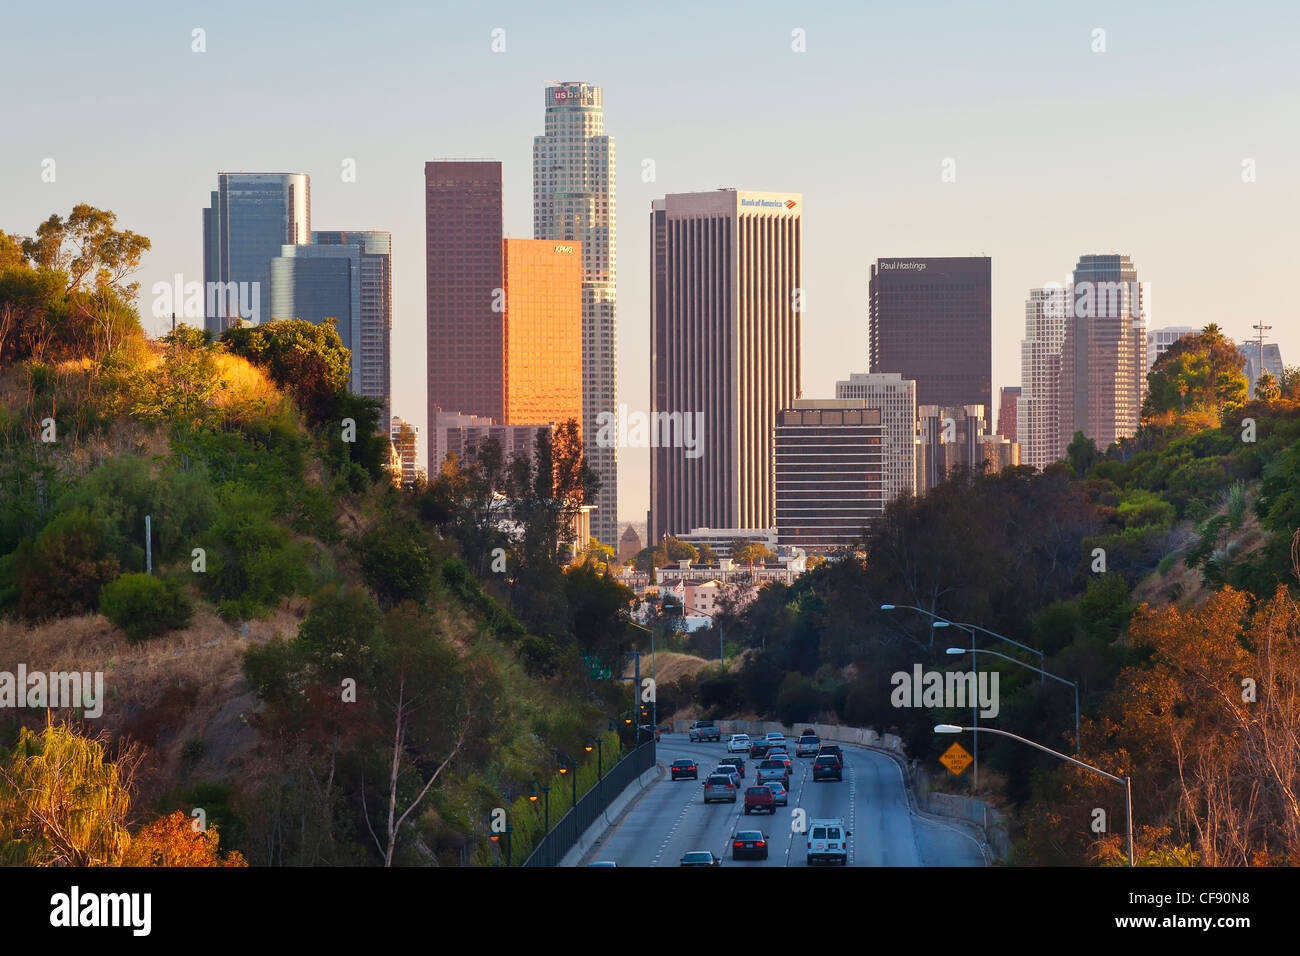 Pasadena Freeway (CA autostrada 110) che conduce al centro di Los Angeles, California, Stati Uniti d'America Foto Stock